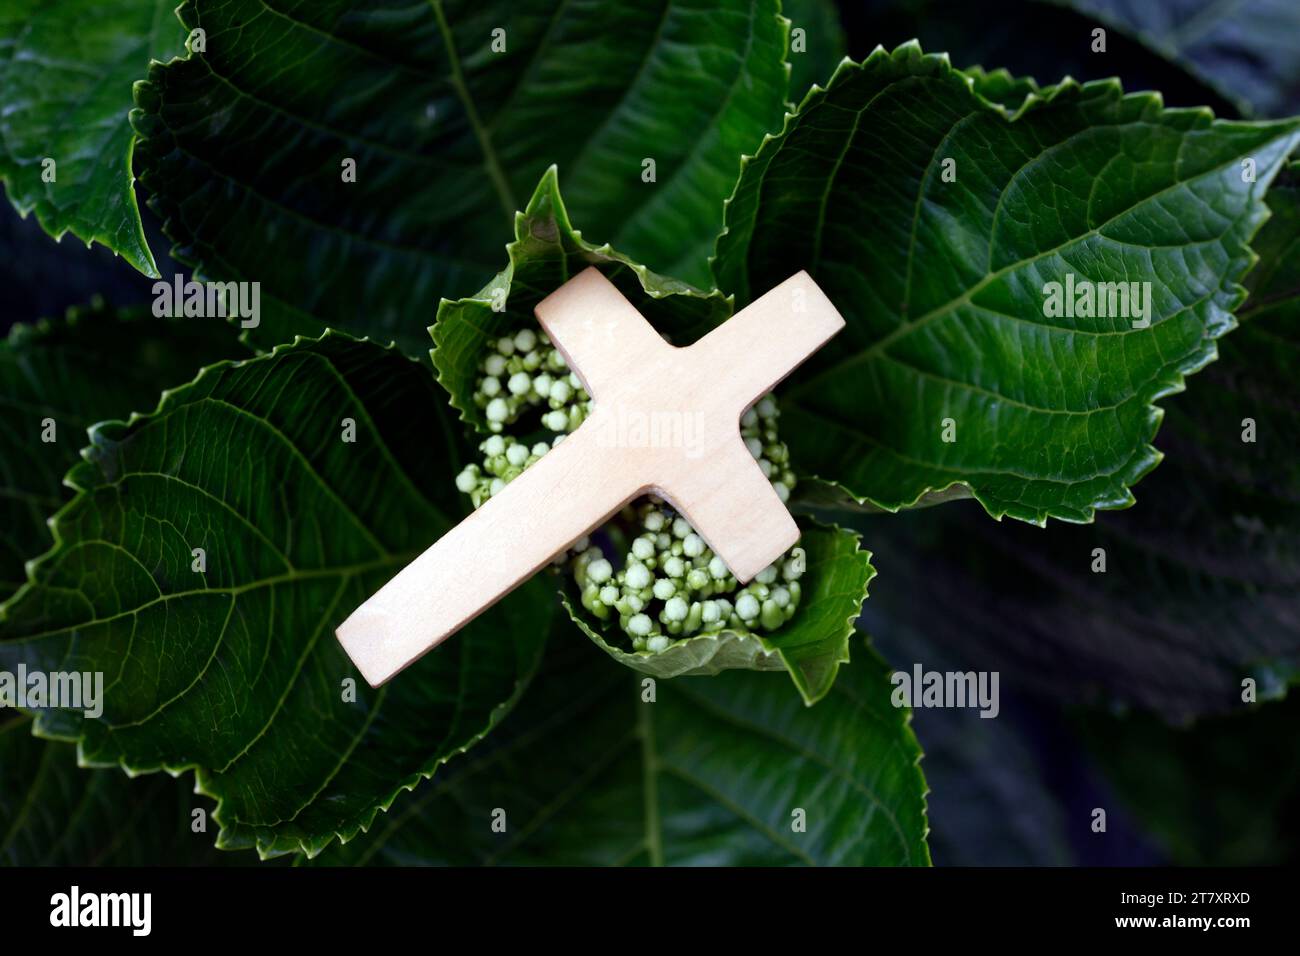 Symbole religieux de prière dans la nature, croix chrétienne sur feuilles vertes, Vietnam, Indochine, Asie du Sud-est, Asie Banque D'Images